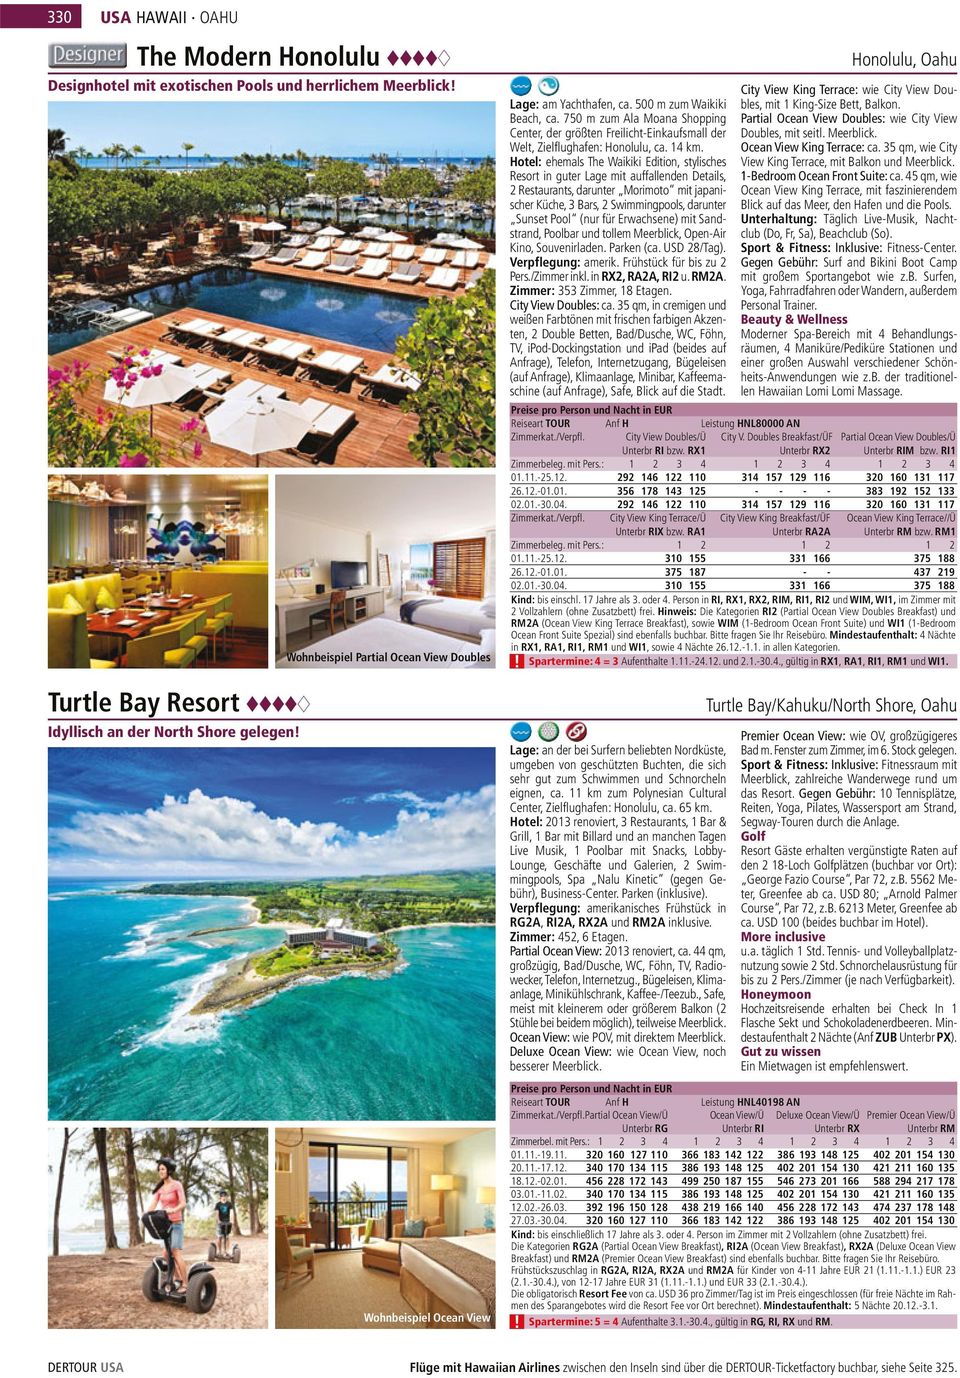 Hotel: ehemals The Waikiki Edition, stylisches Resort in guter Lage mit auffallenden Details, 2 Restaurants, darunter Morimoto mit japanischer Küche, 3 Bars, 2 Swimmingpools, darunter Sunset Pool